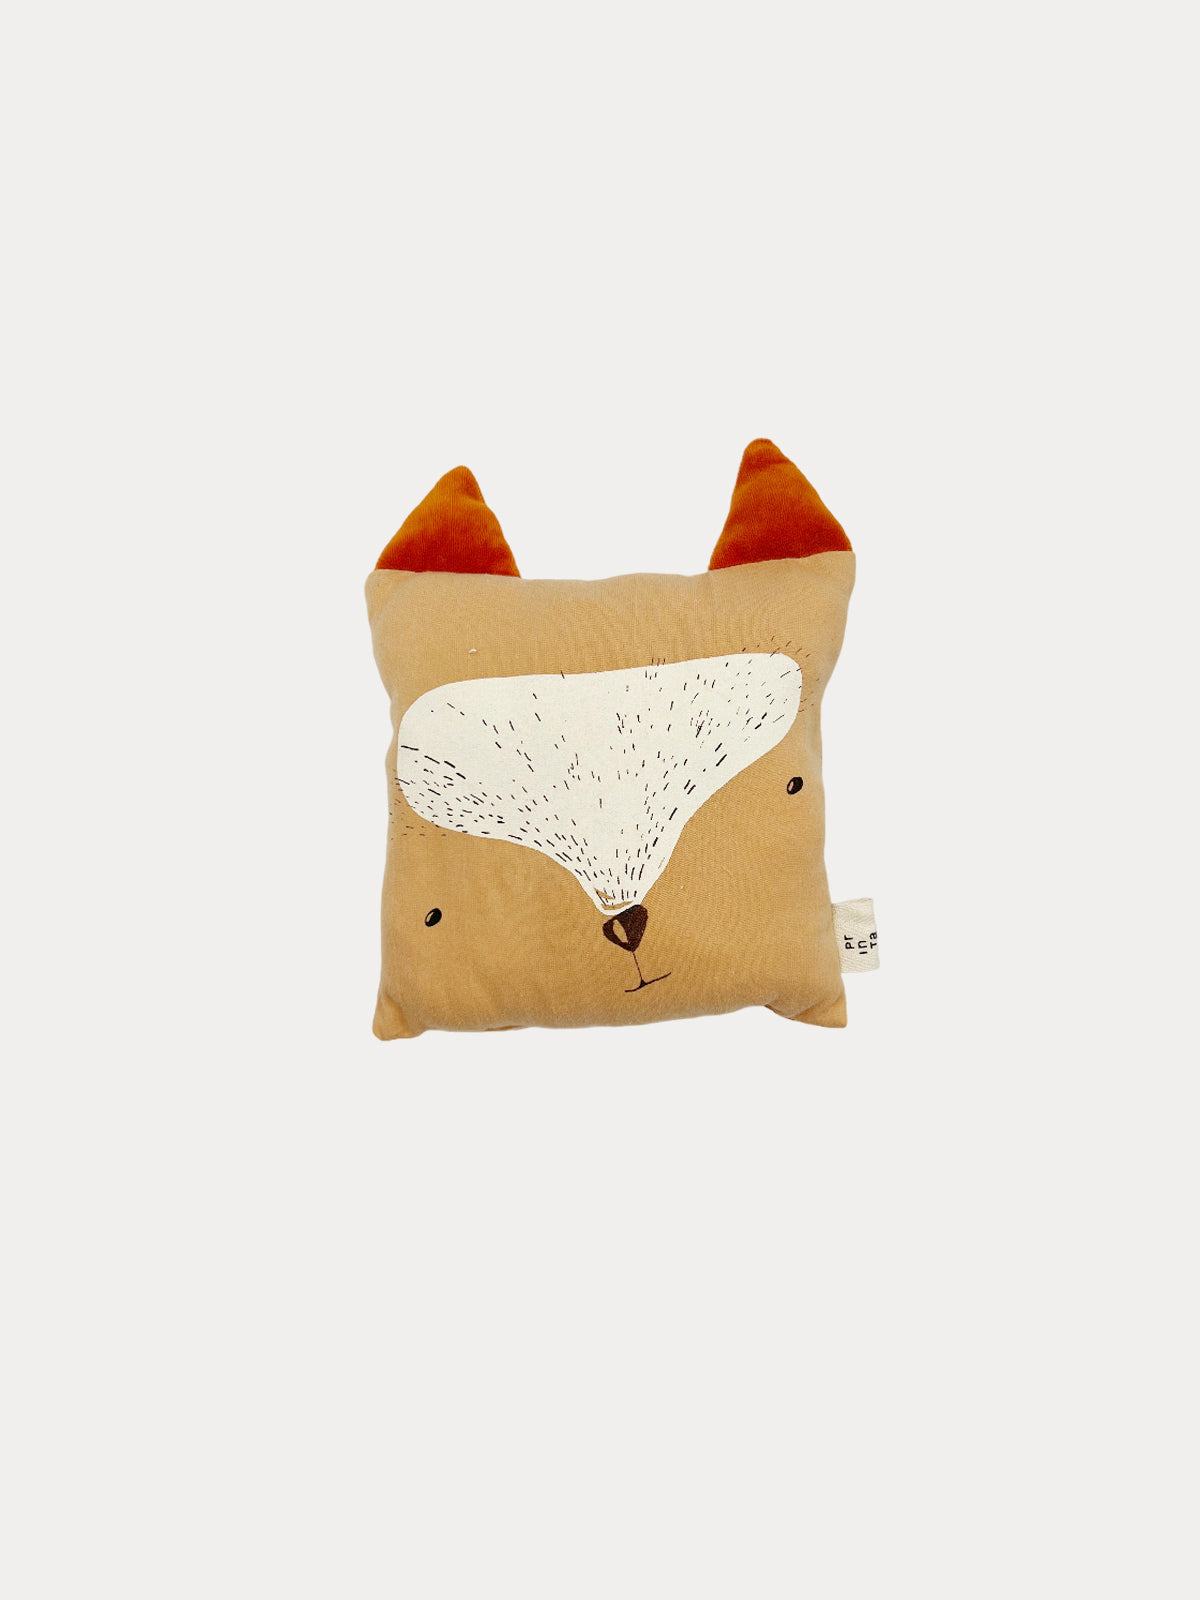 Fox pillow doll